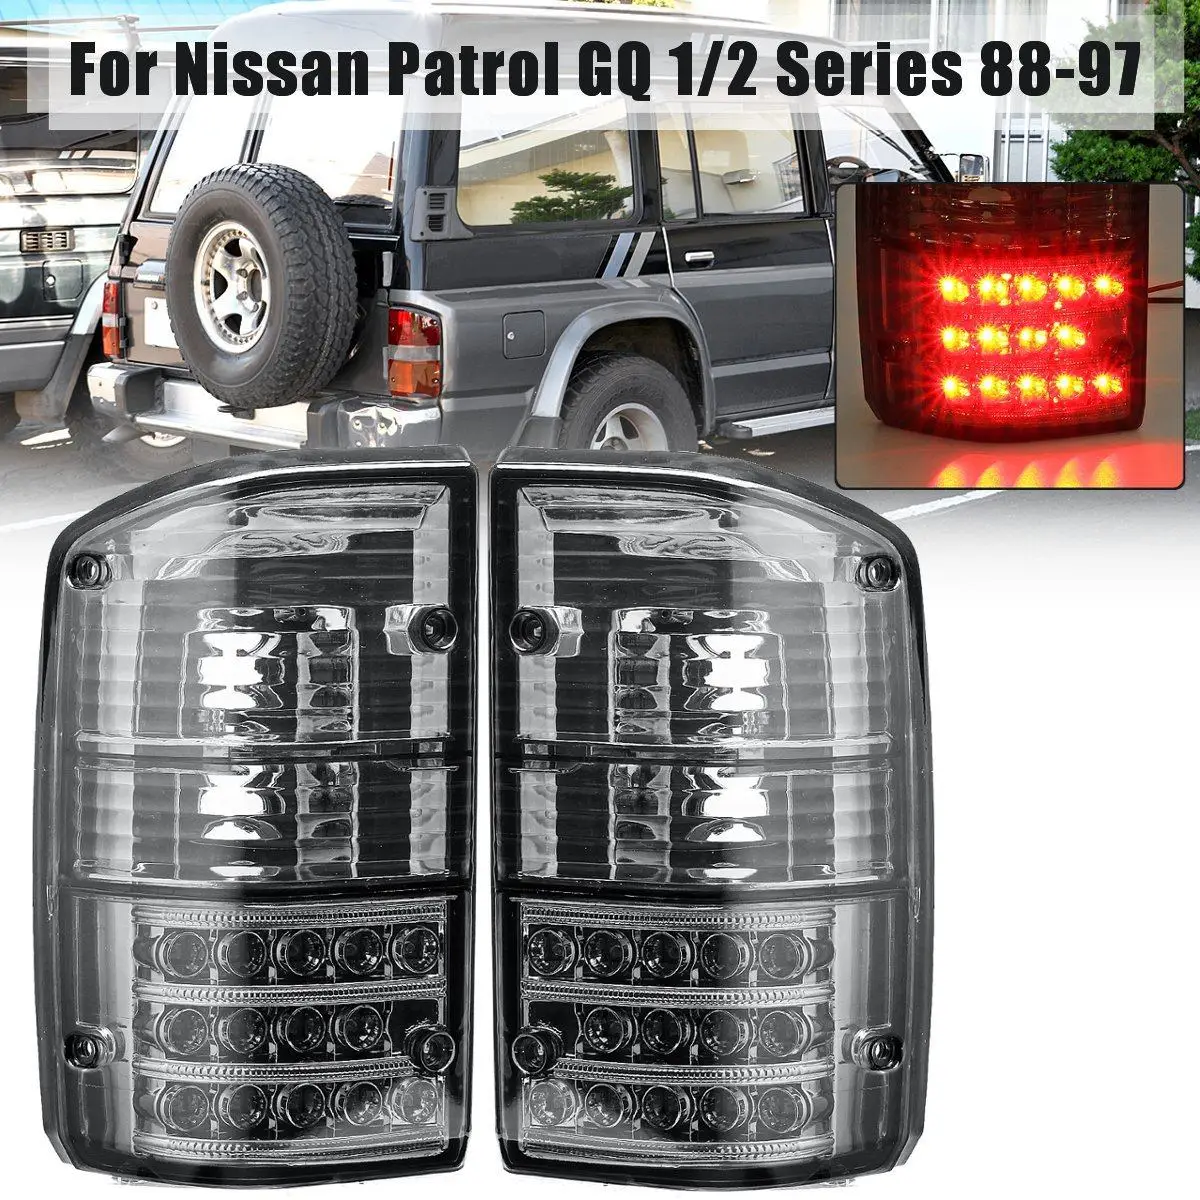 Vrs Cylinder Head Gasket Set Fit For Nissan Patrol Gu Y61